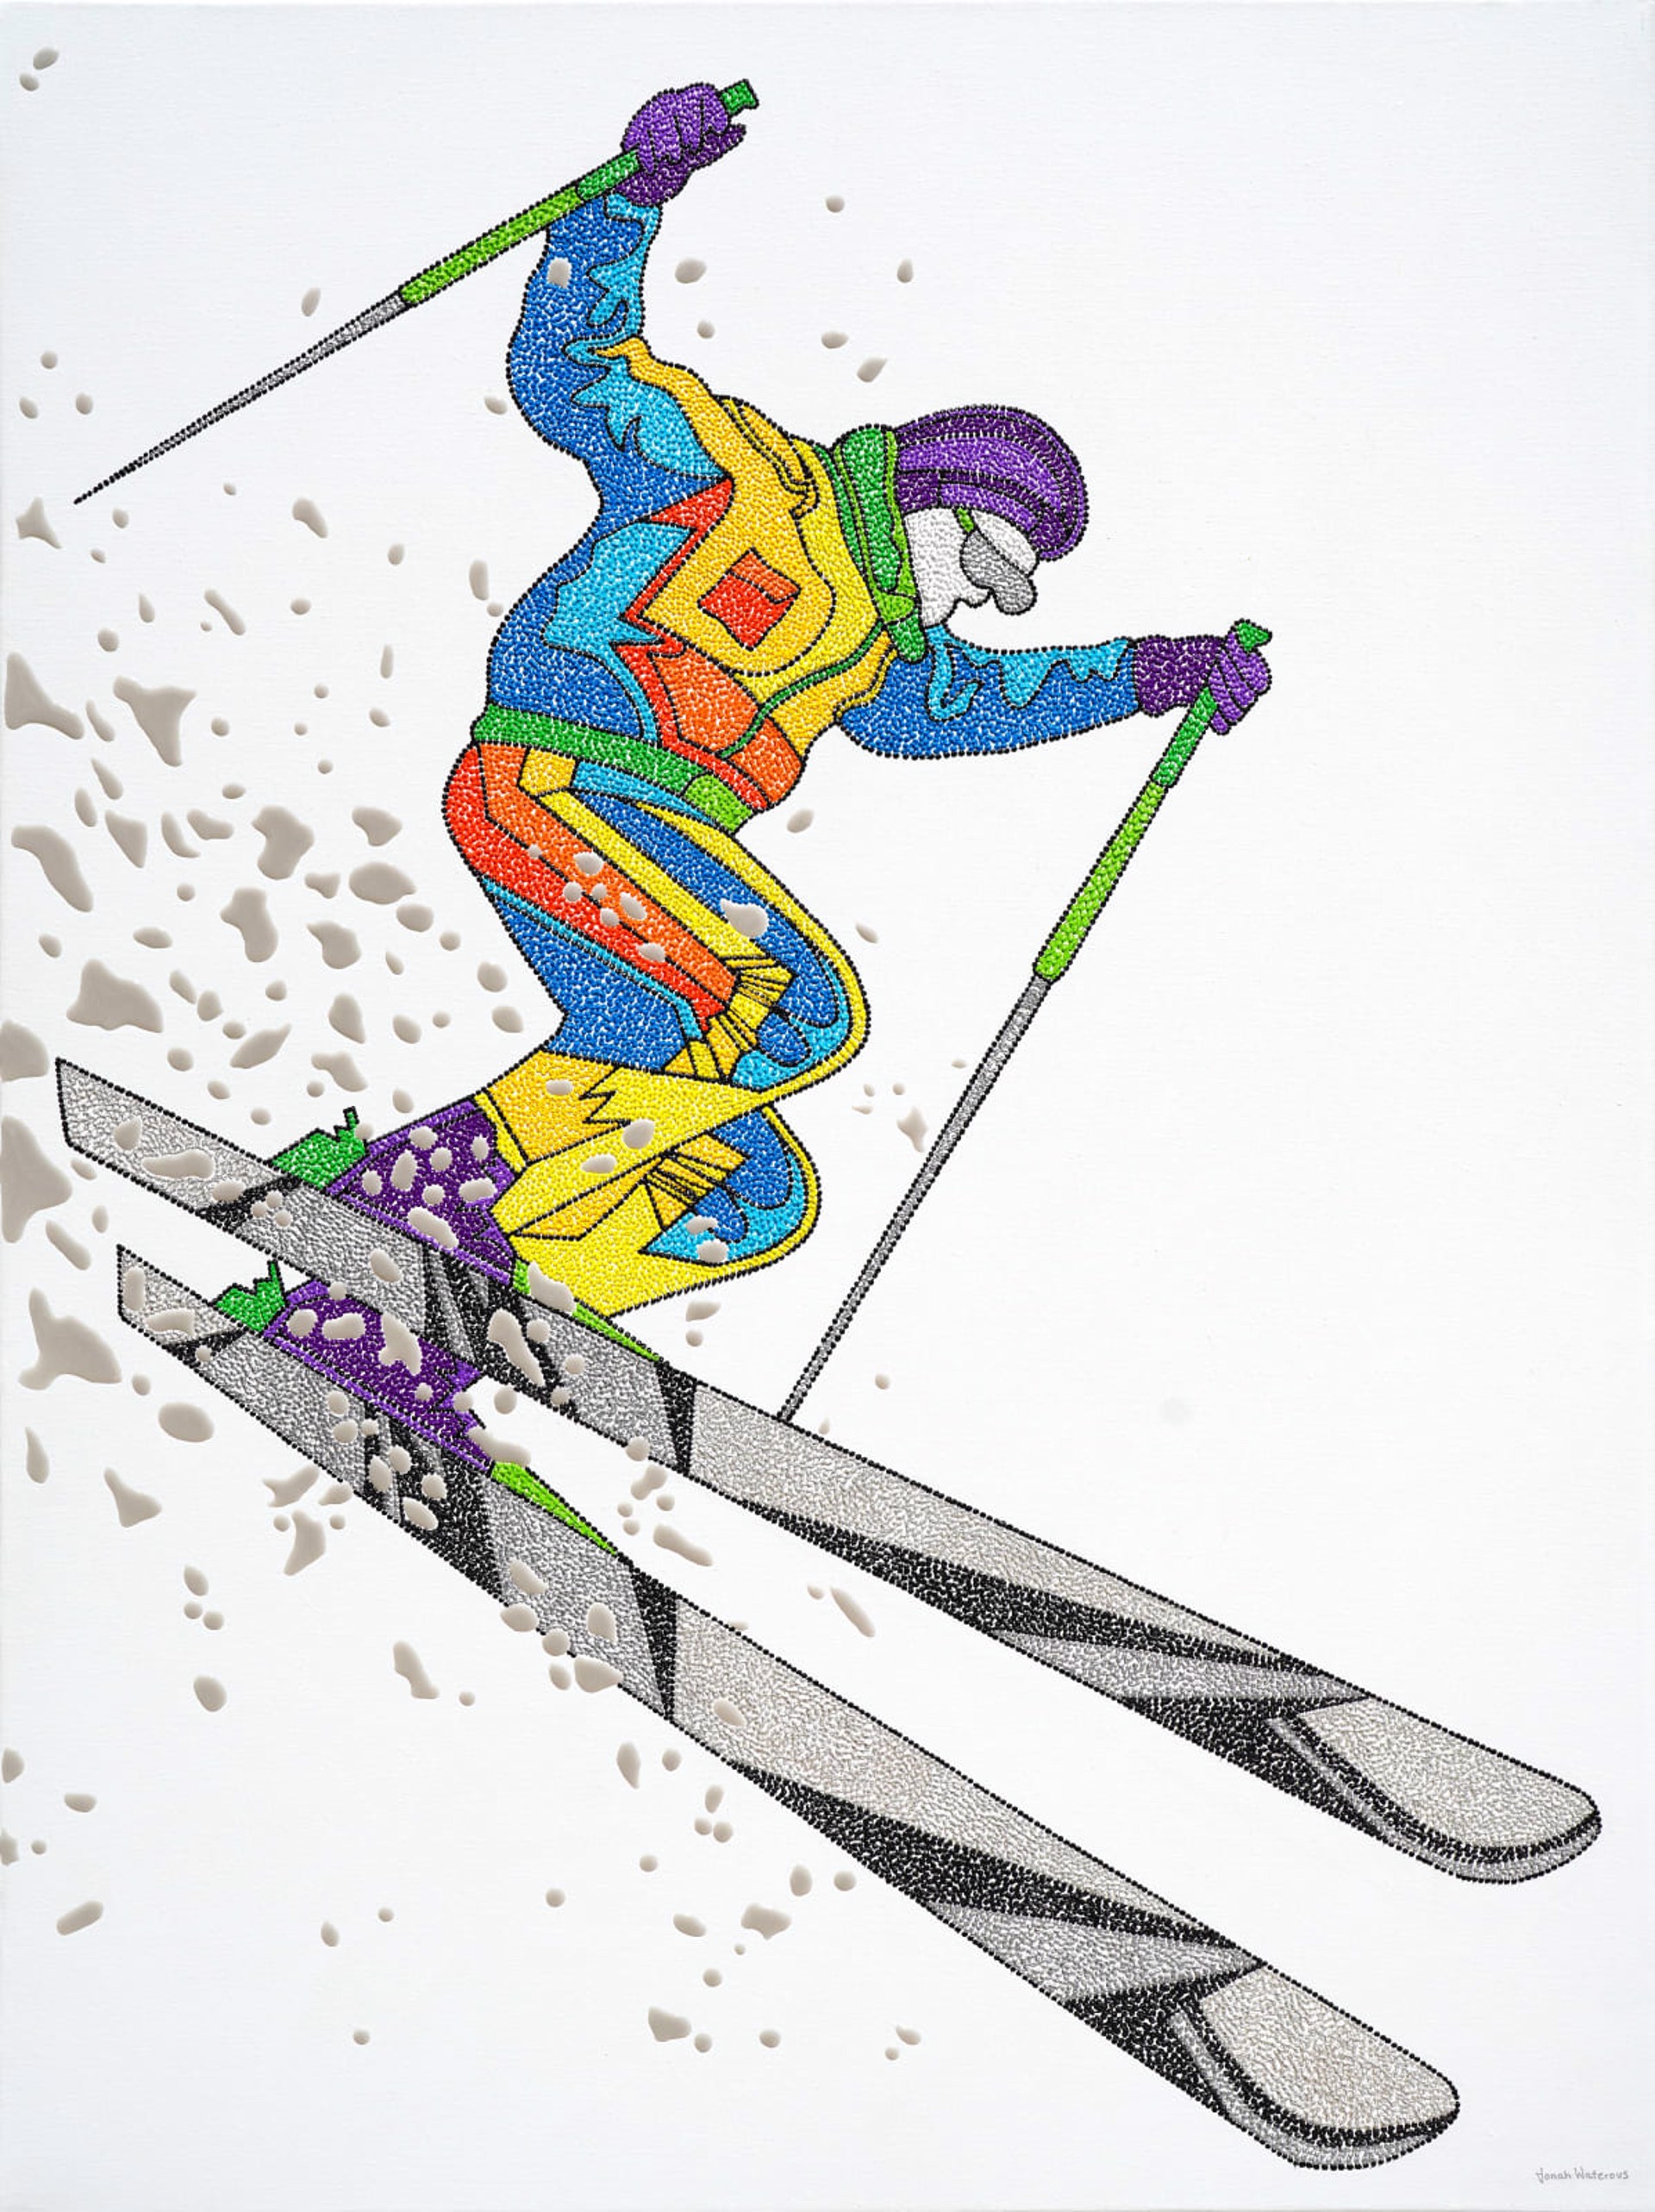 Ski 0102 by Jonah Waterous